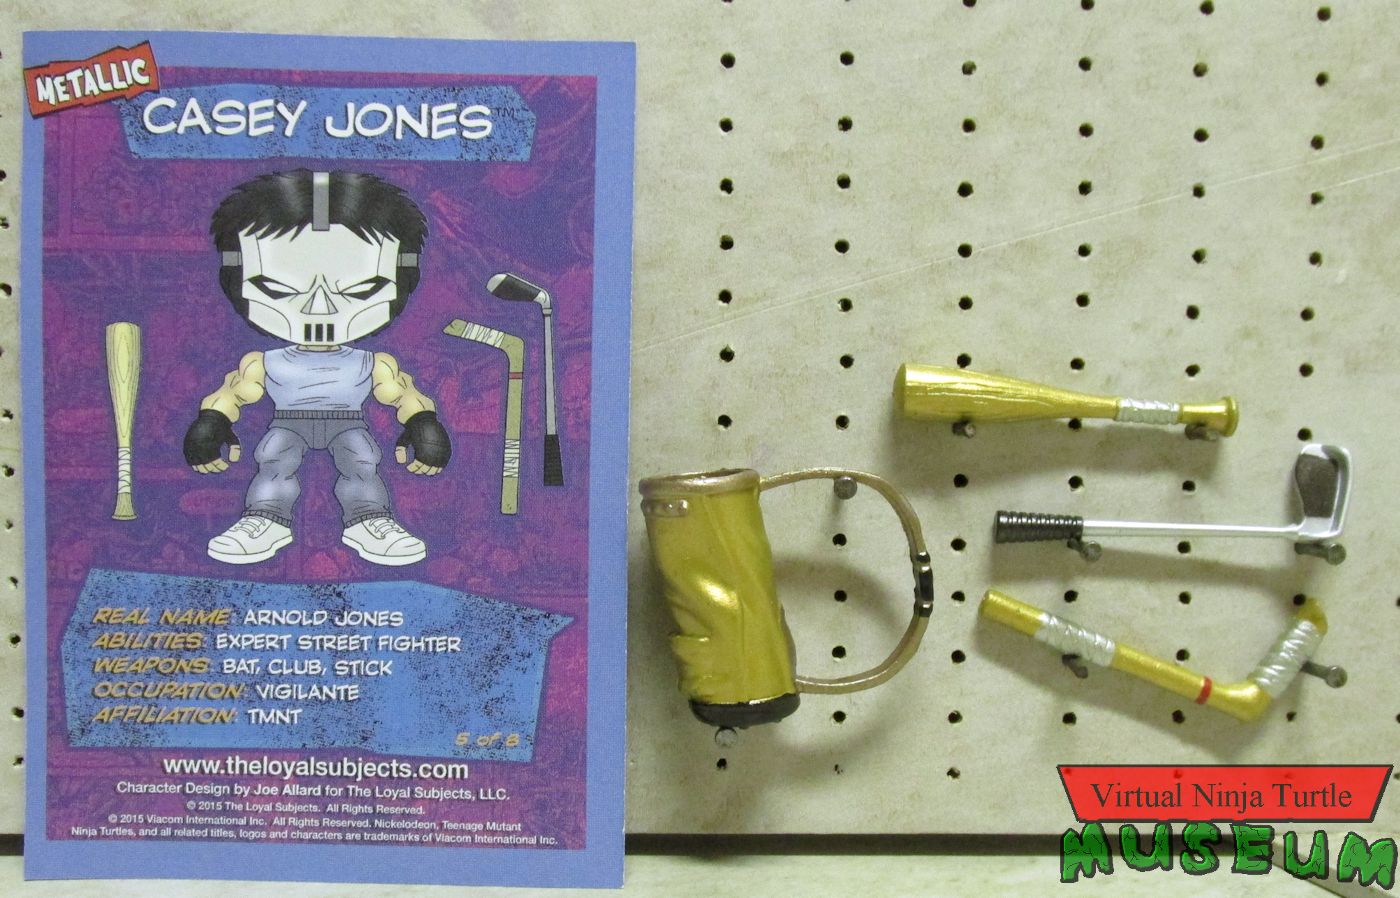 Casey Jones's accessories